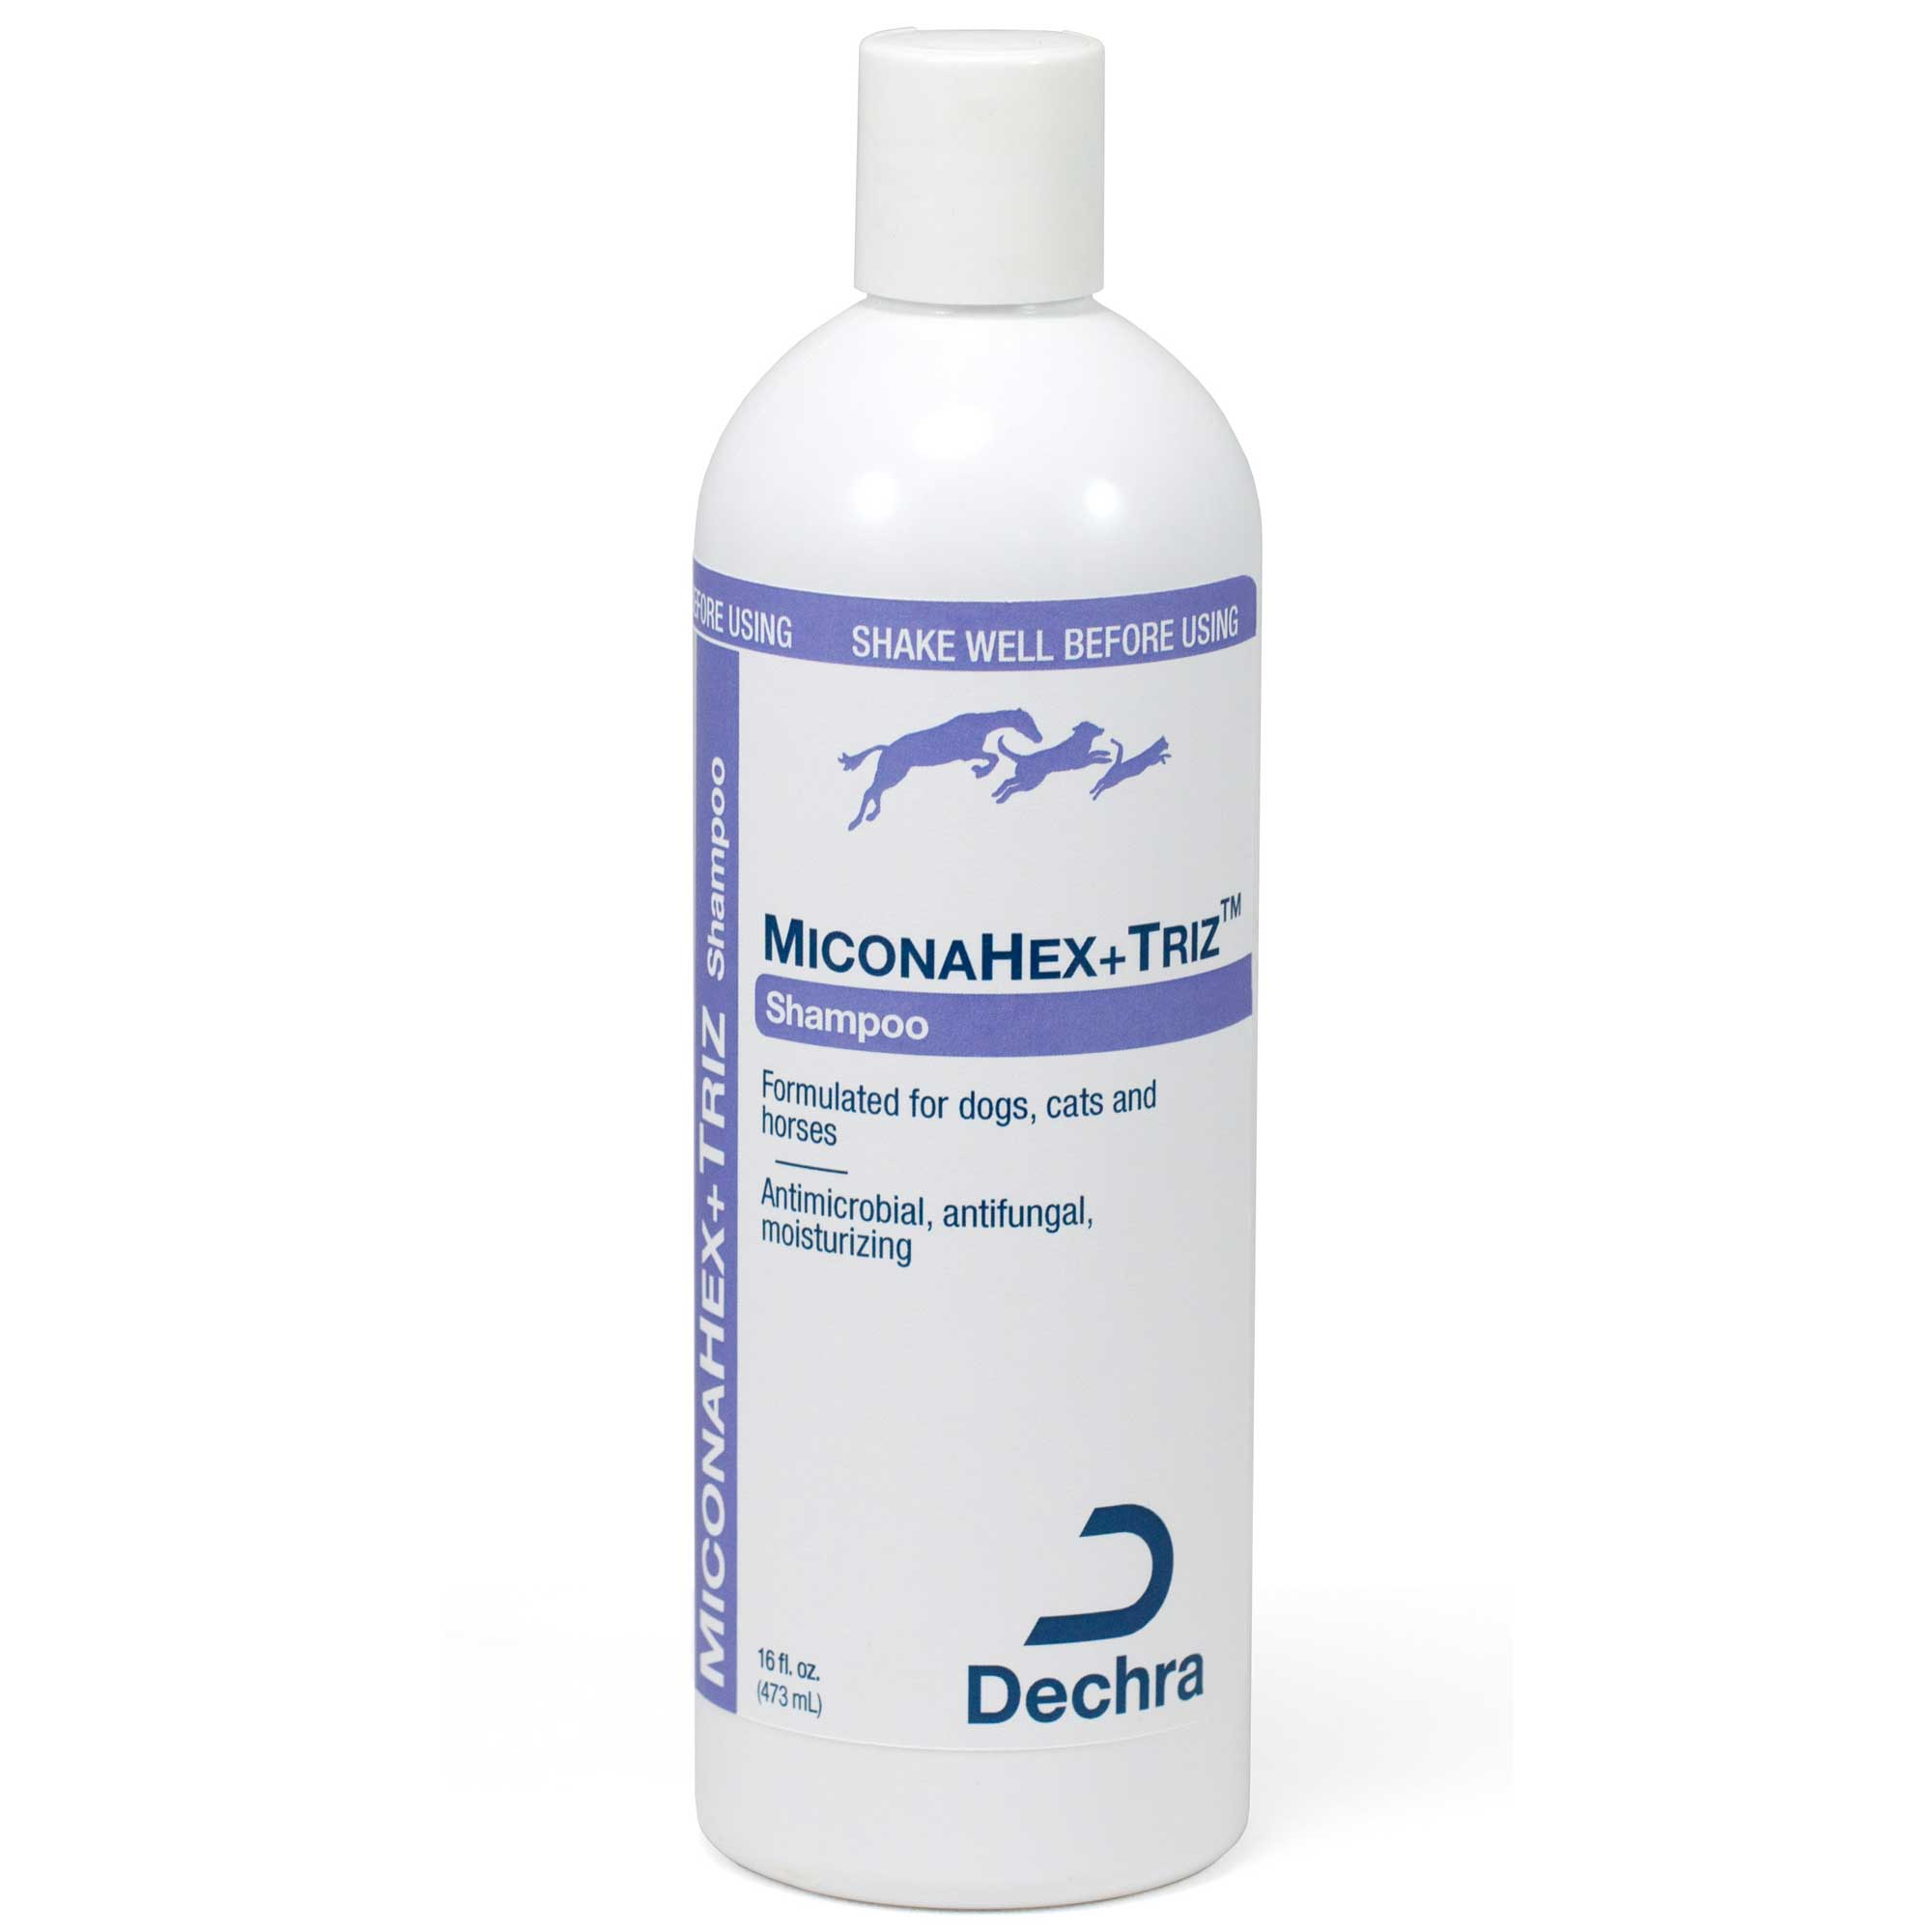 MiconaHex+Triz Shampoo Usage